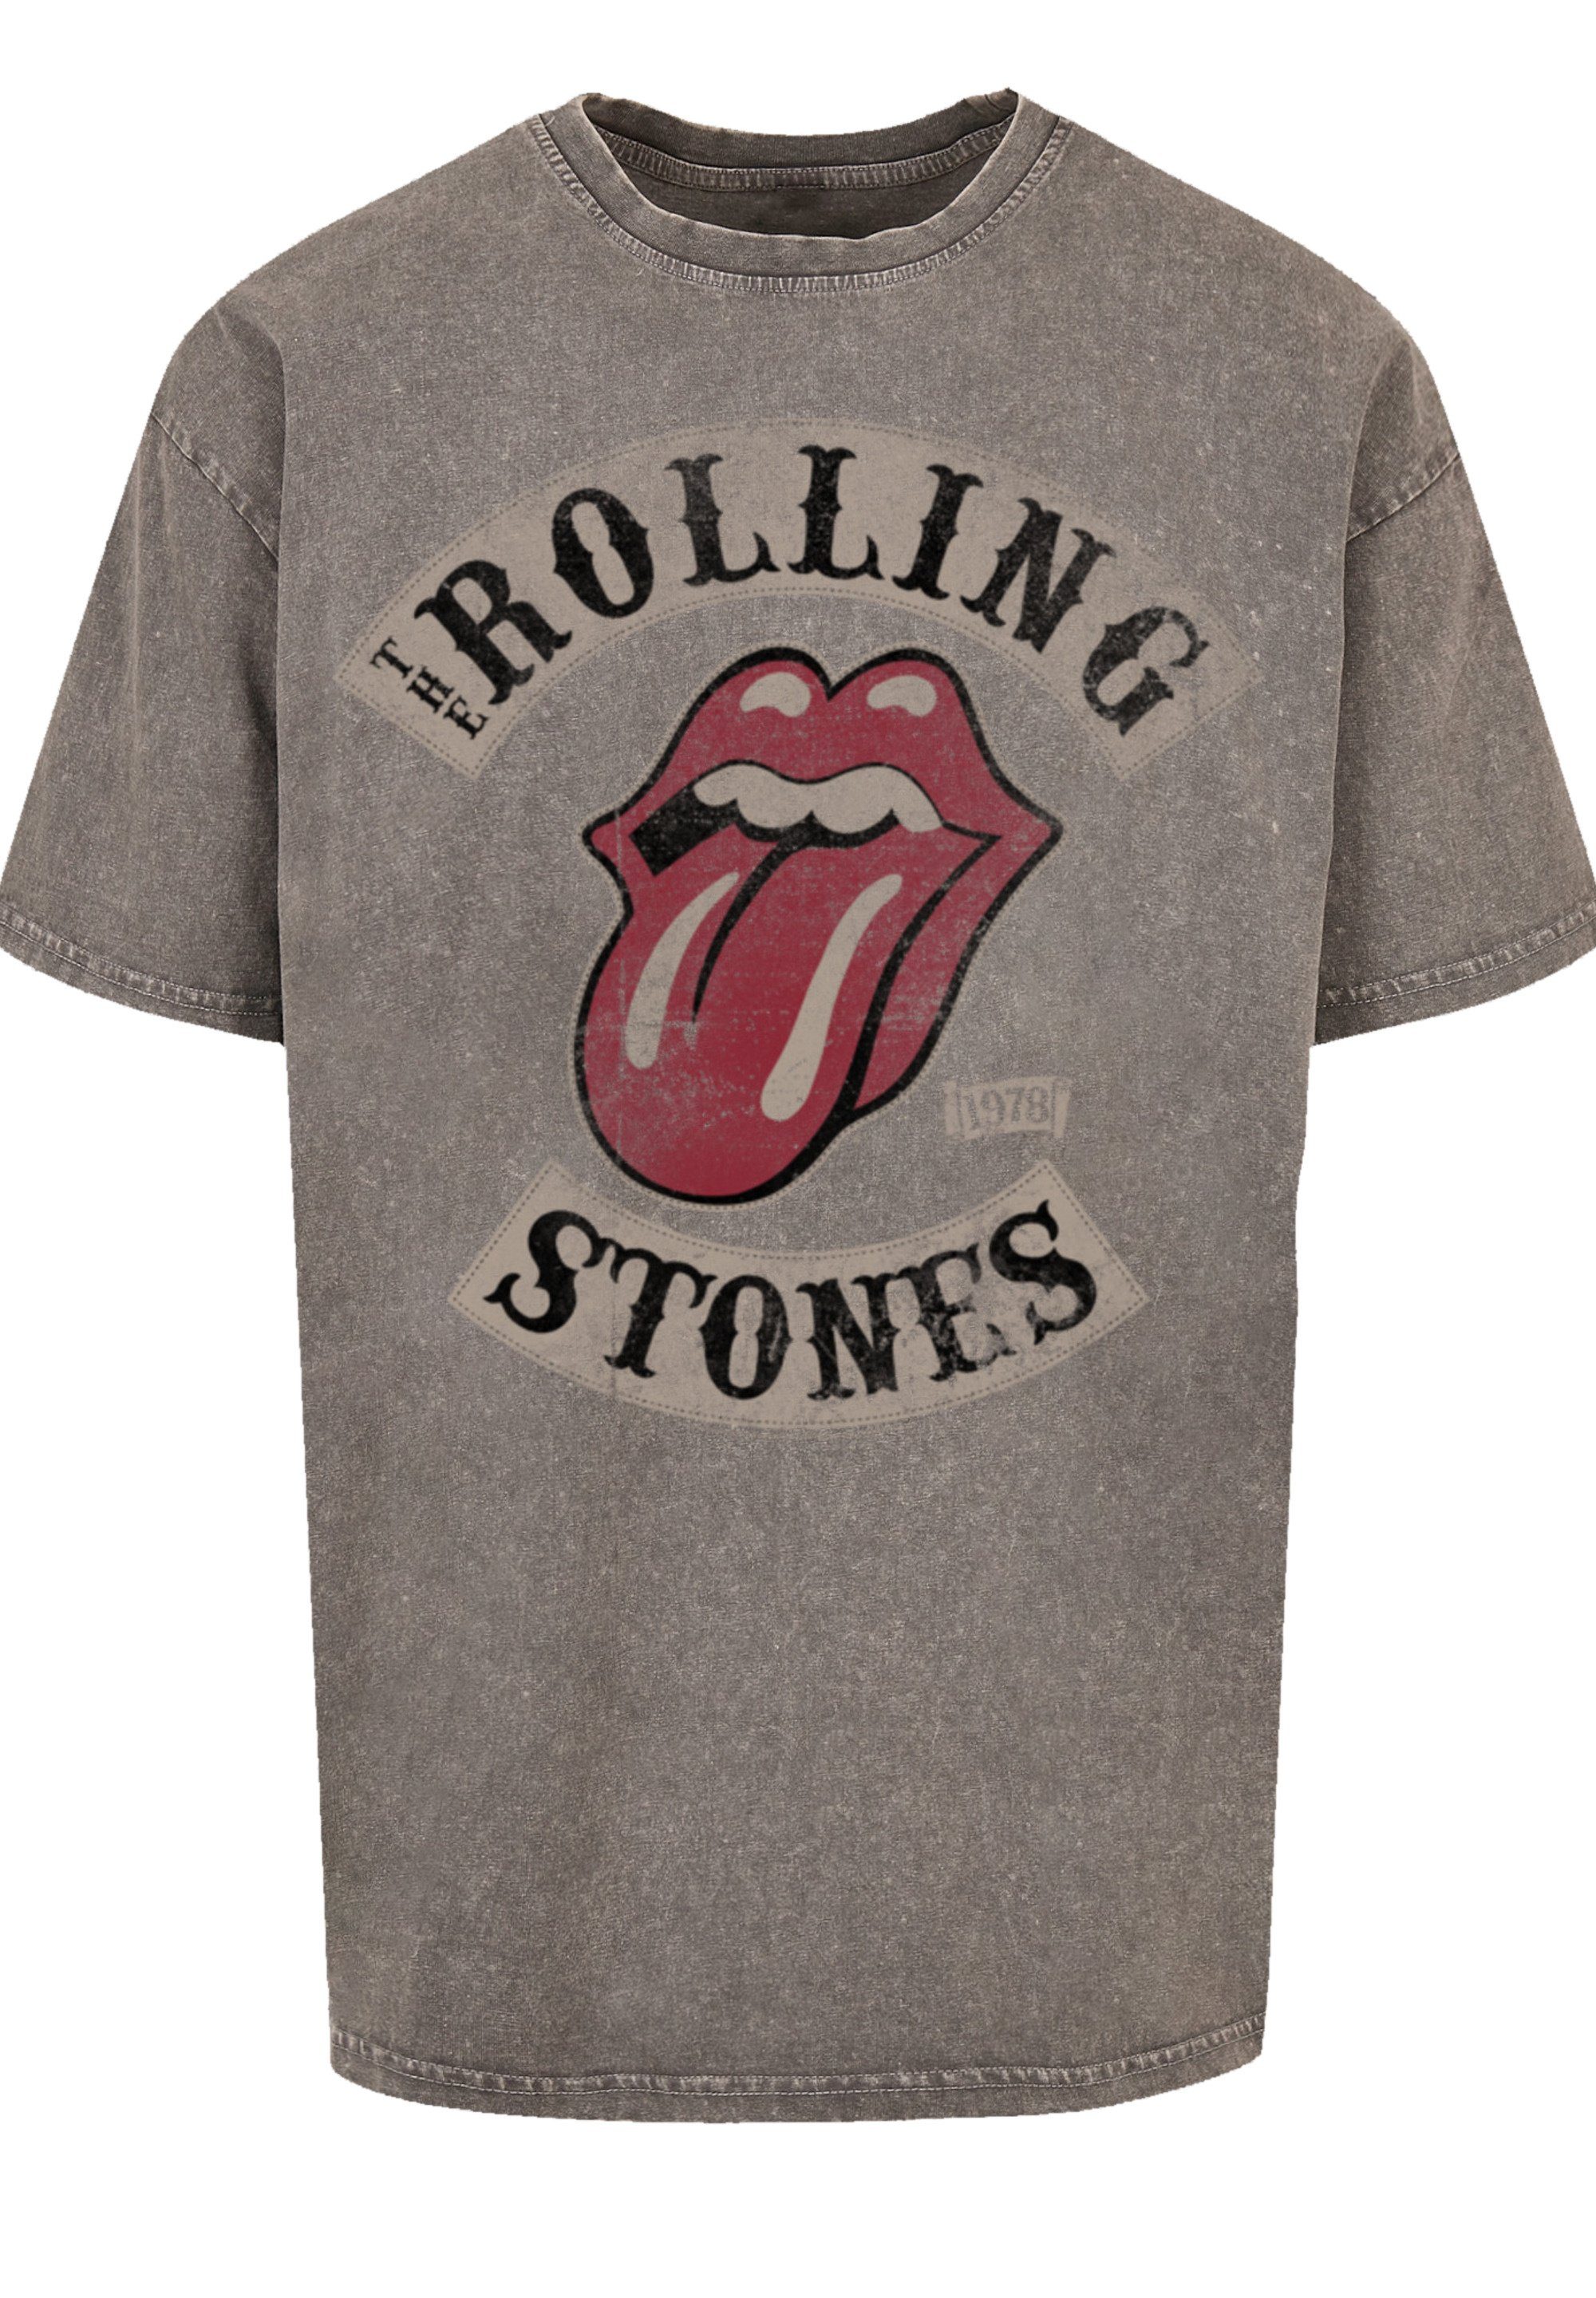 F4NT4STIC T-Shirt The Rolling Stones Tour '78 Print, Fällt weit aus, bitte  eine Größe kleiner bestellen